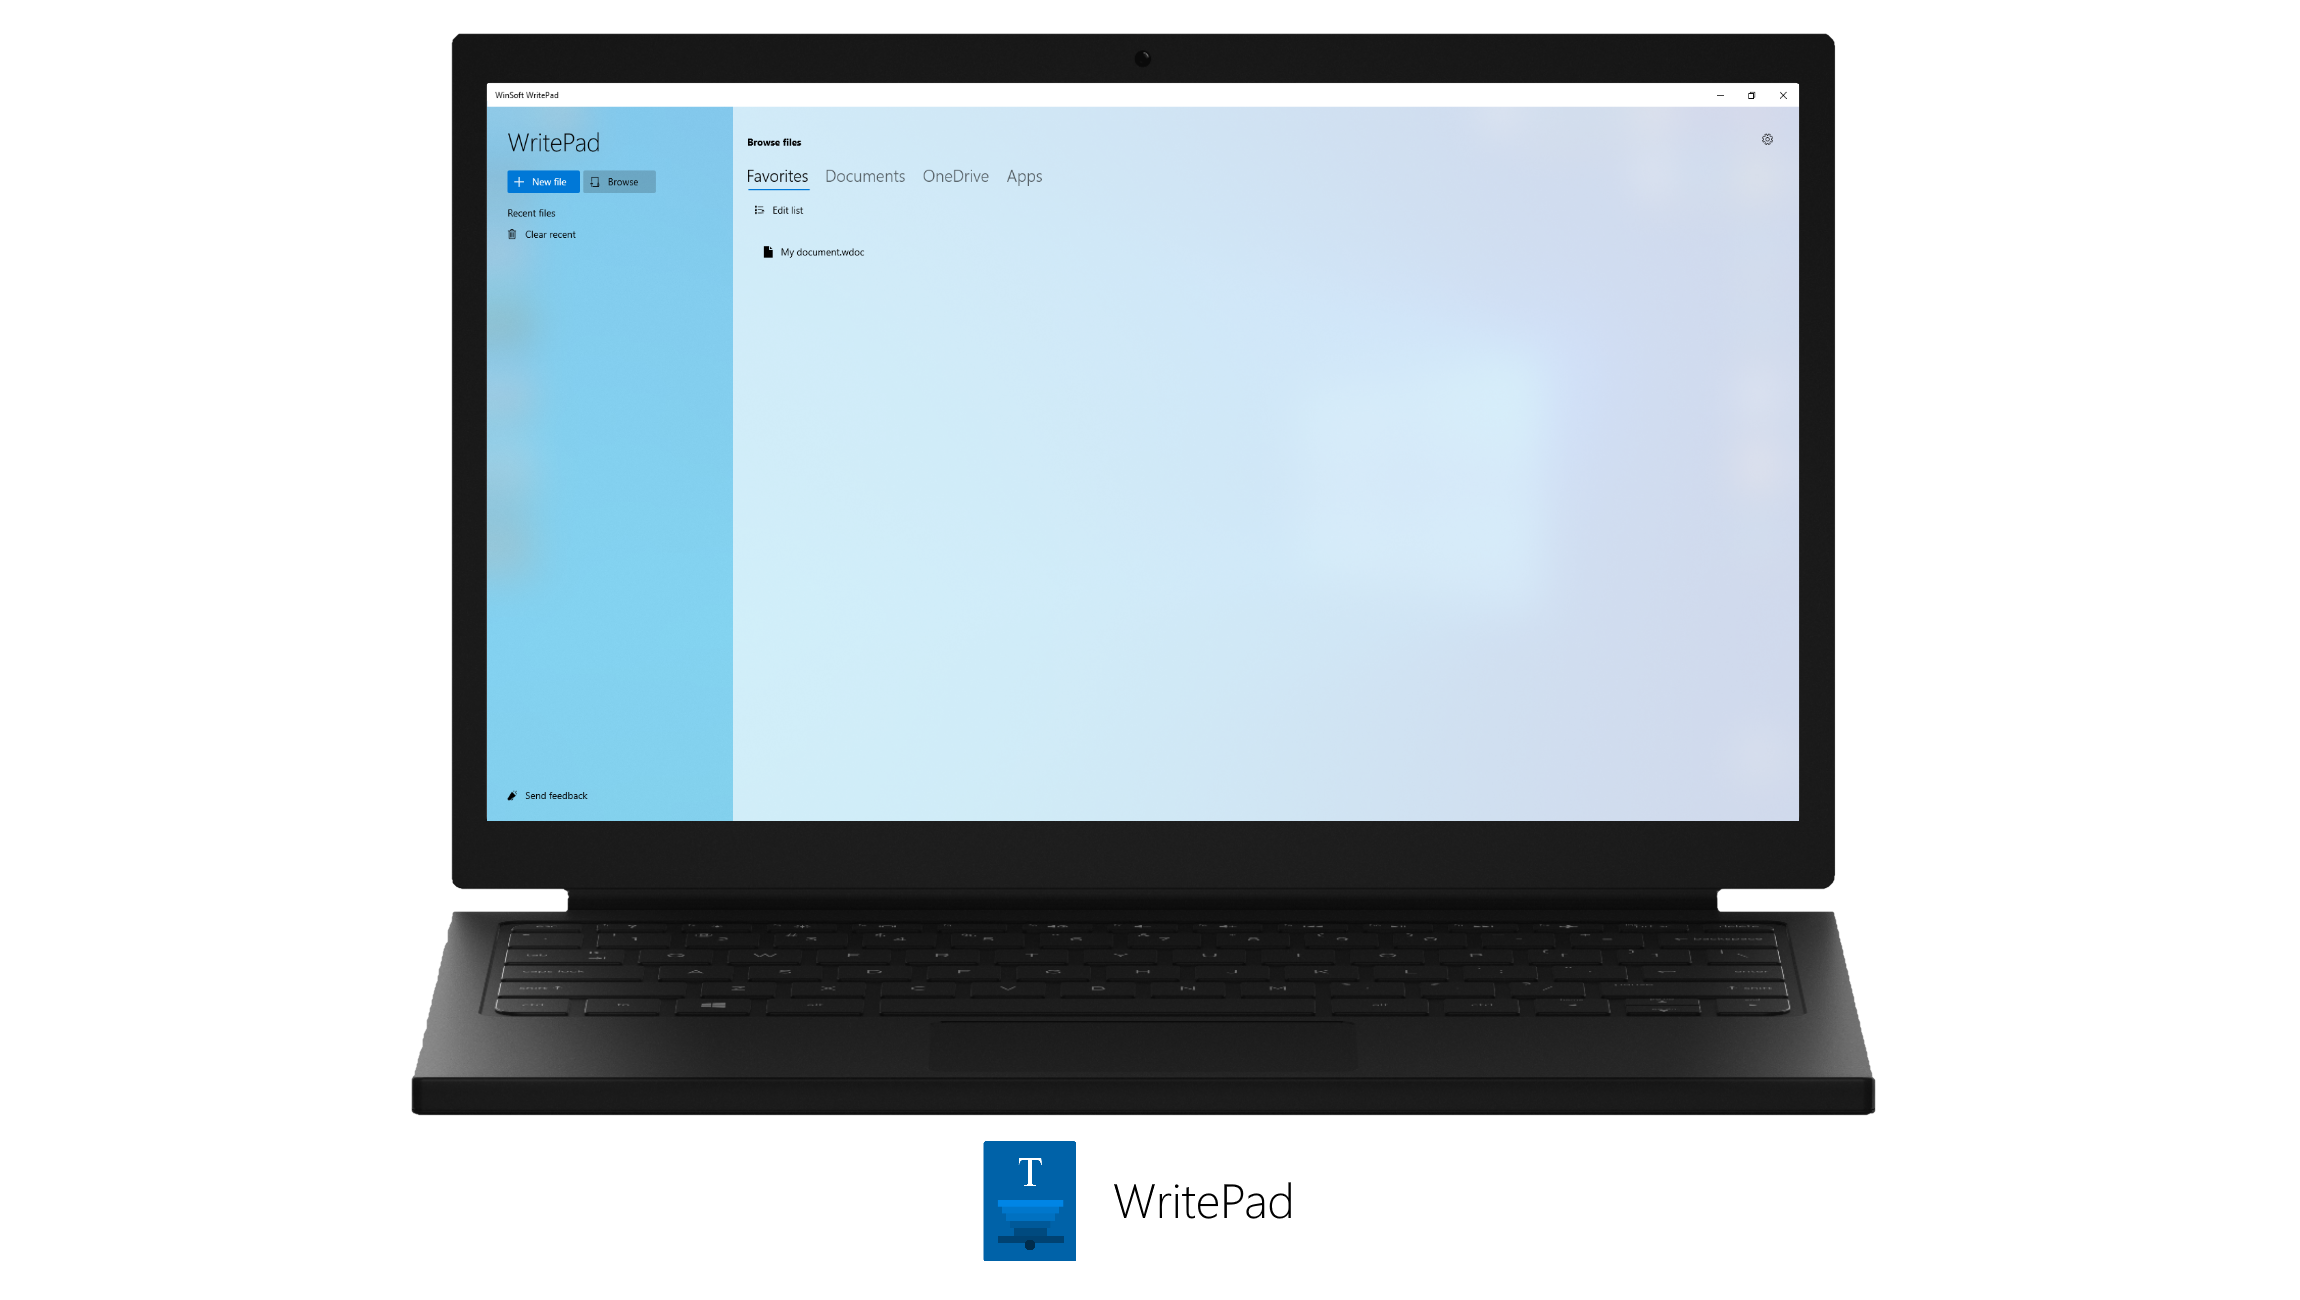 WinSoft WritePad